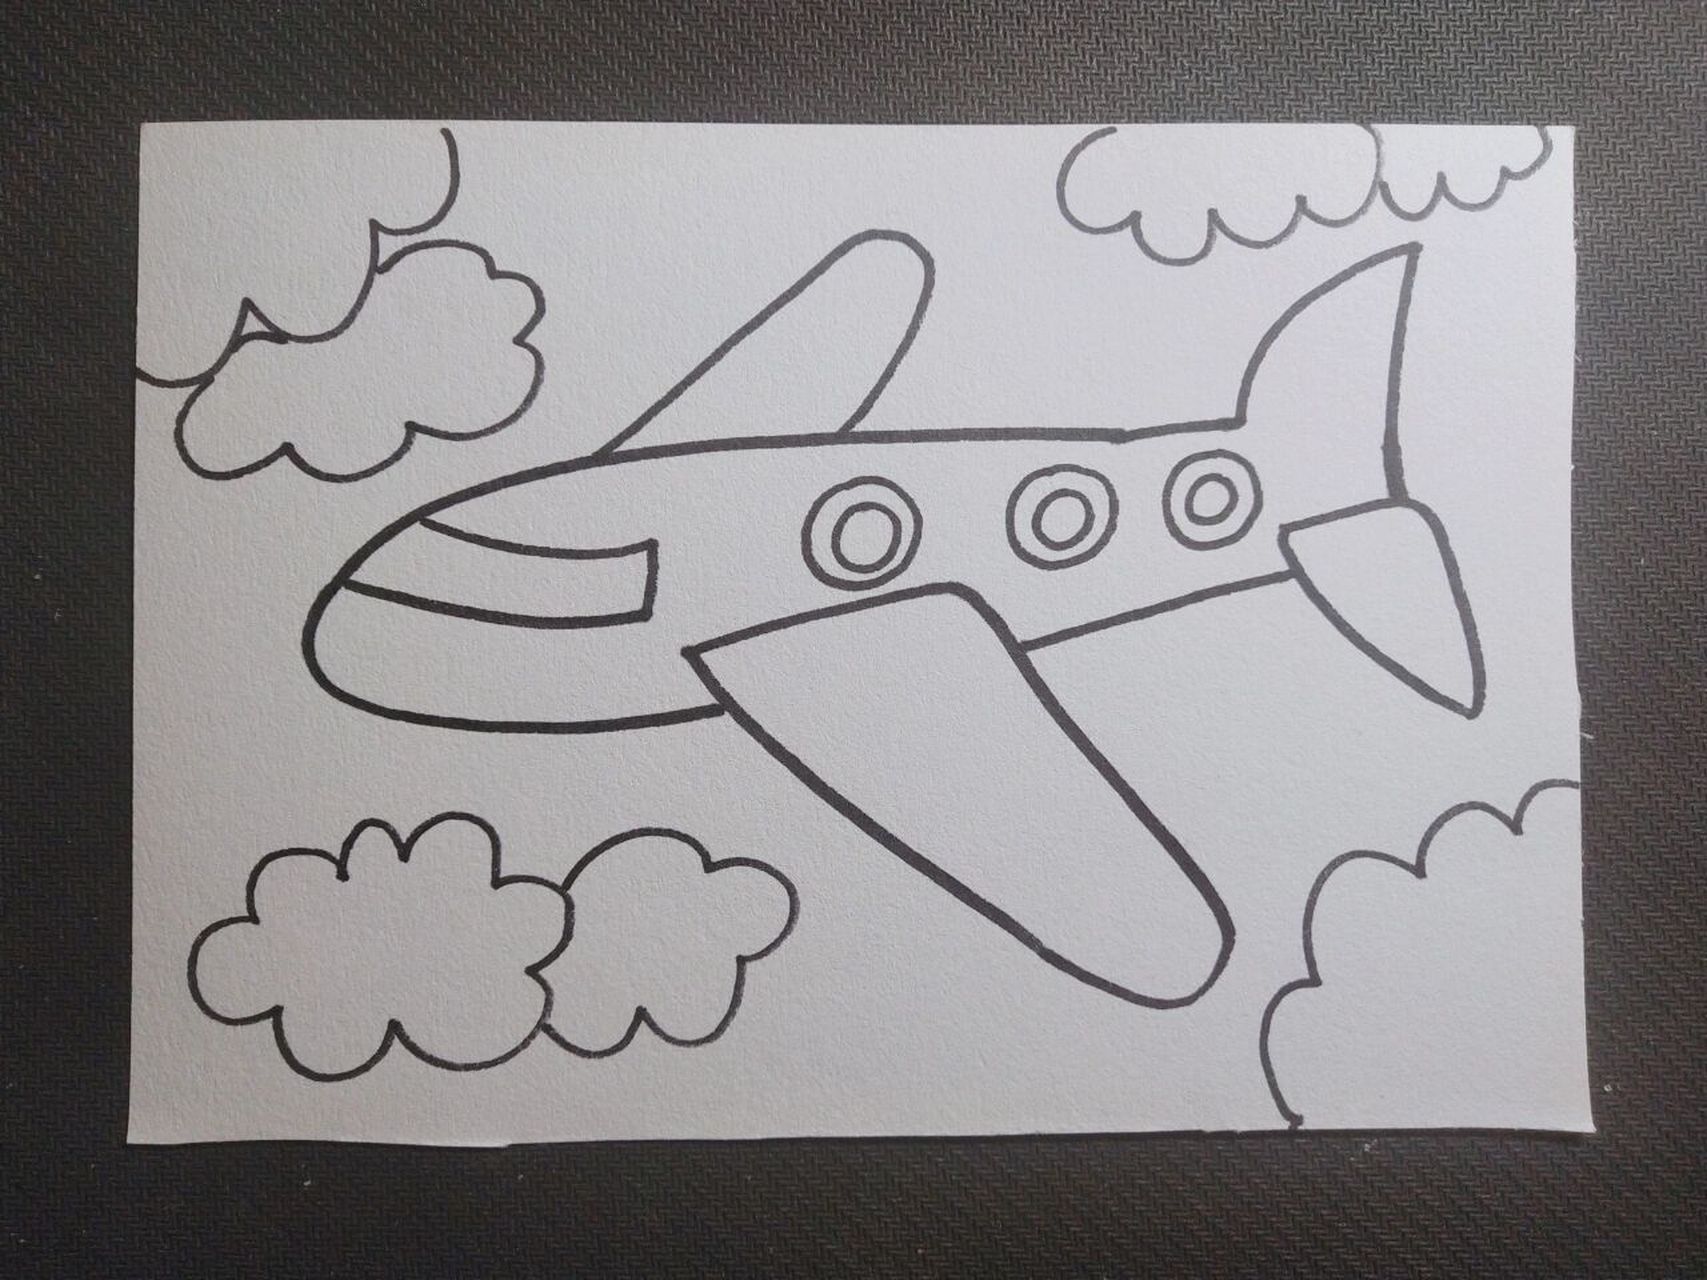 【100/54】简单儿童画《飞机》 打卡第五十四天~ 临摹 喜欢的请大家点